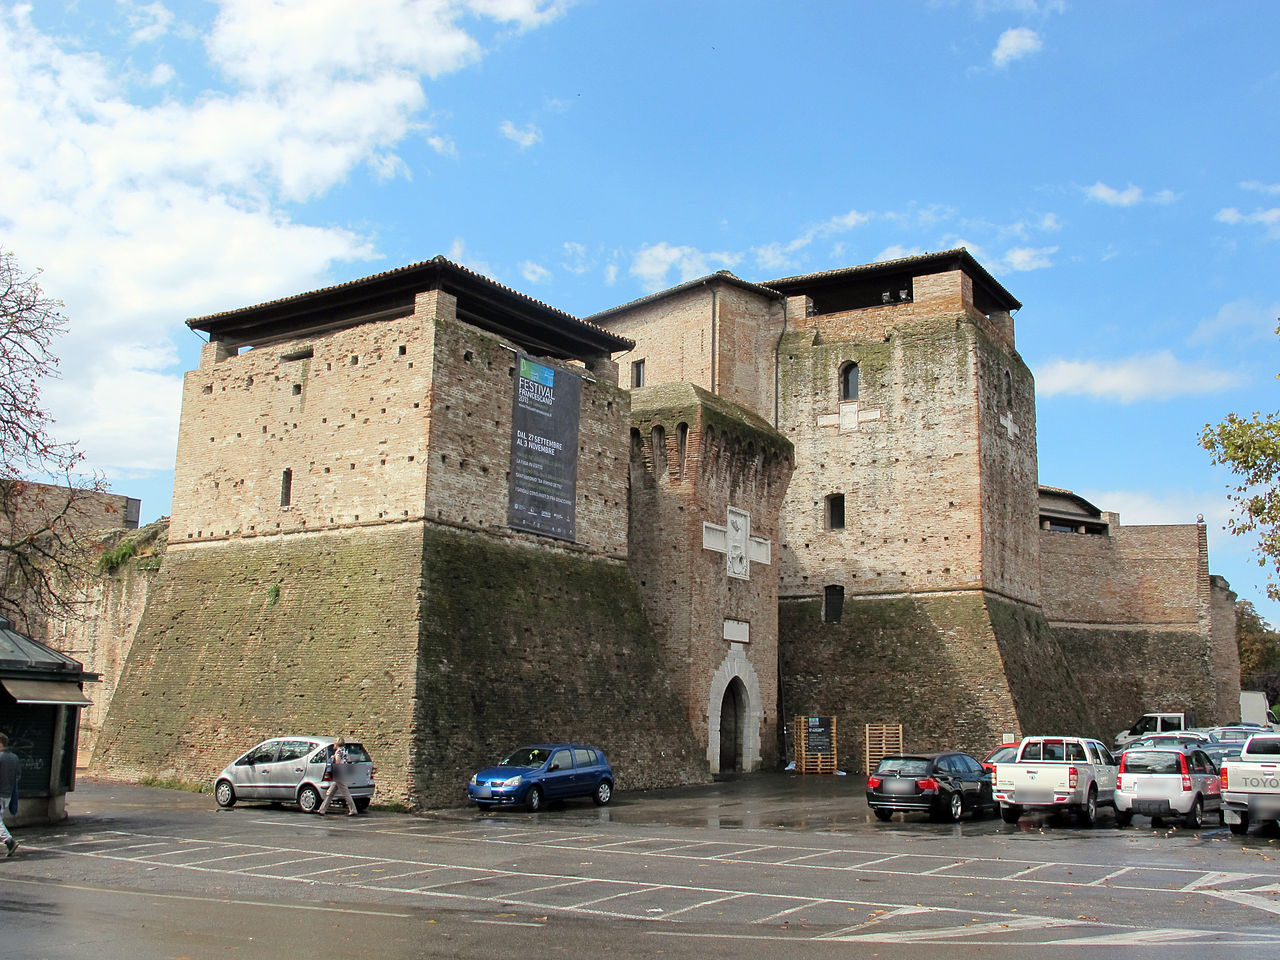 Castel Sismondo, Rimini, Italy